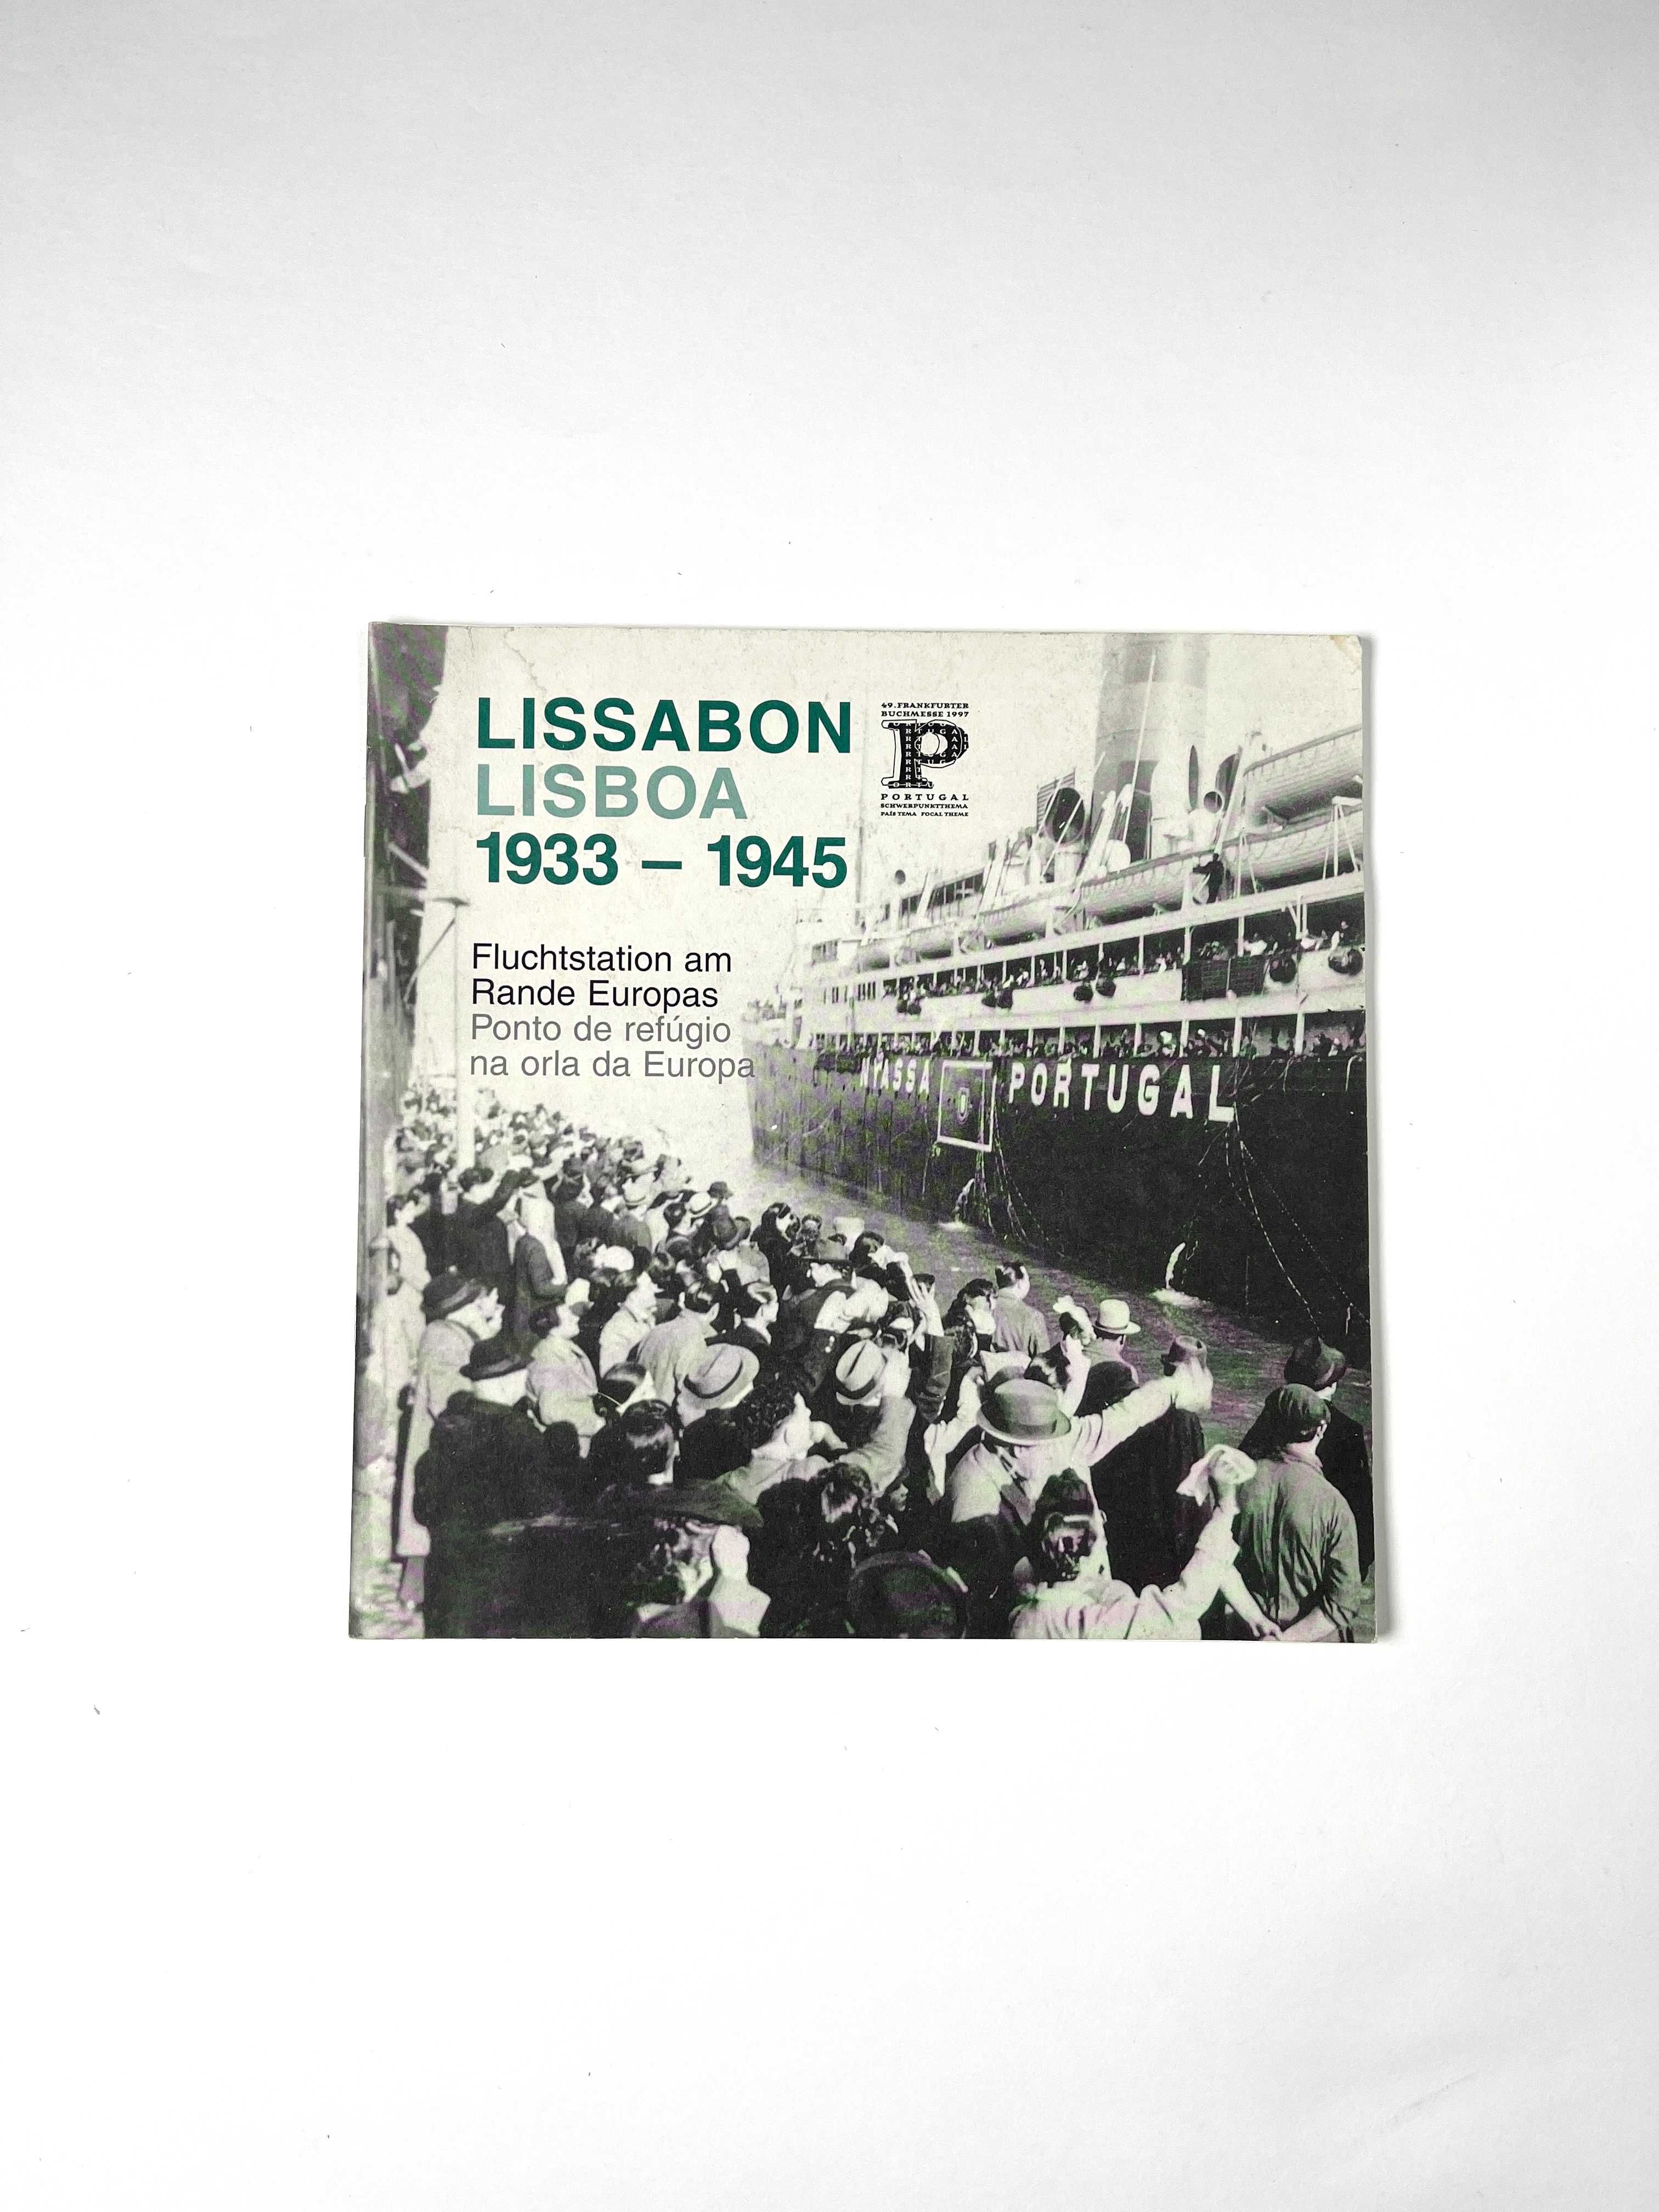 Lisboa 1933.1945 ponto de refúgio na orla da Europa exposição 1997